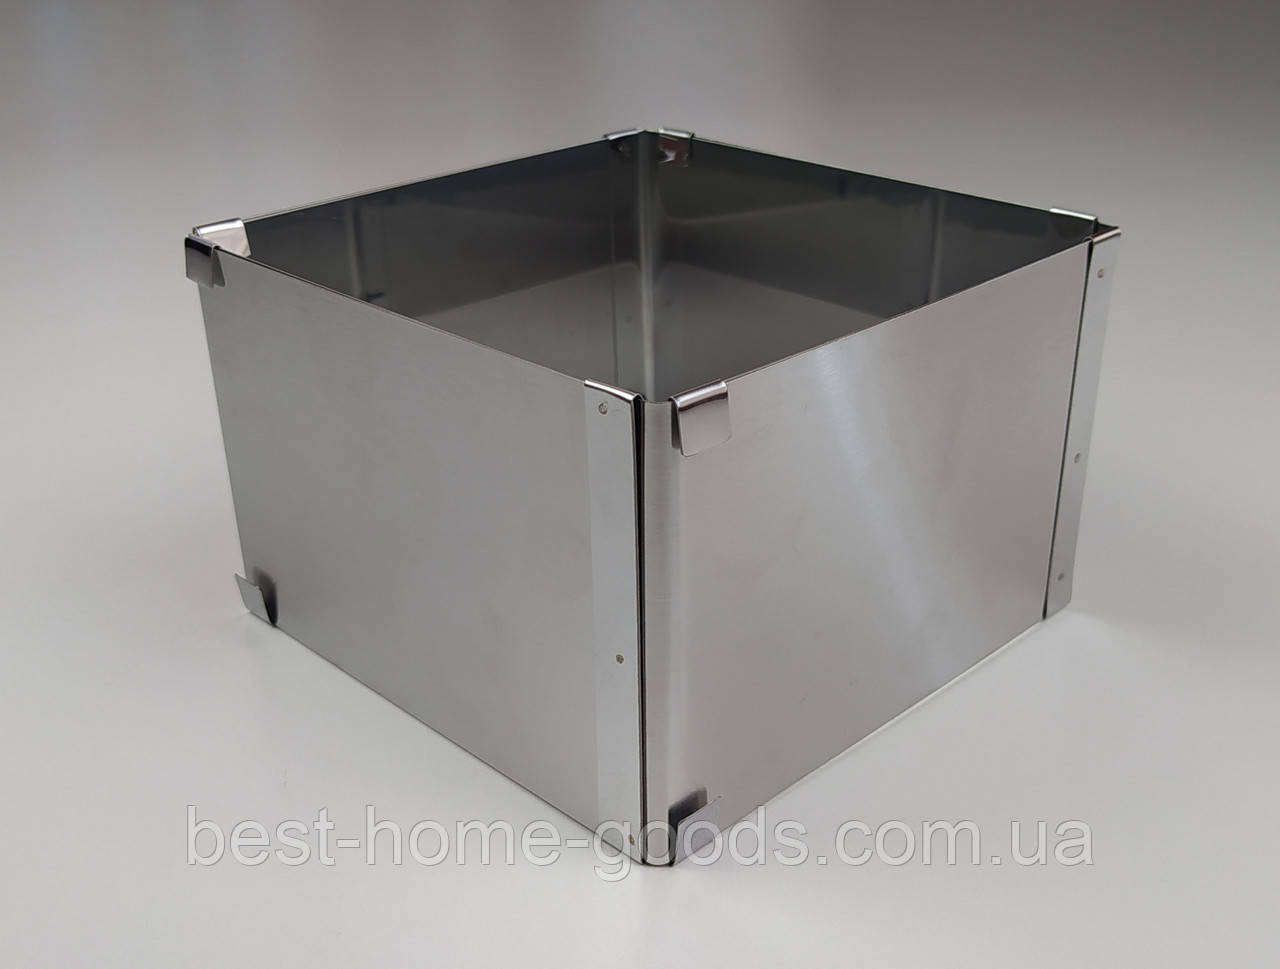 Кондитерська розсувна форма для випічки квадратна нержавіюча сталь 16см * 16см, В - 10см.